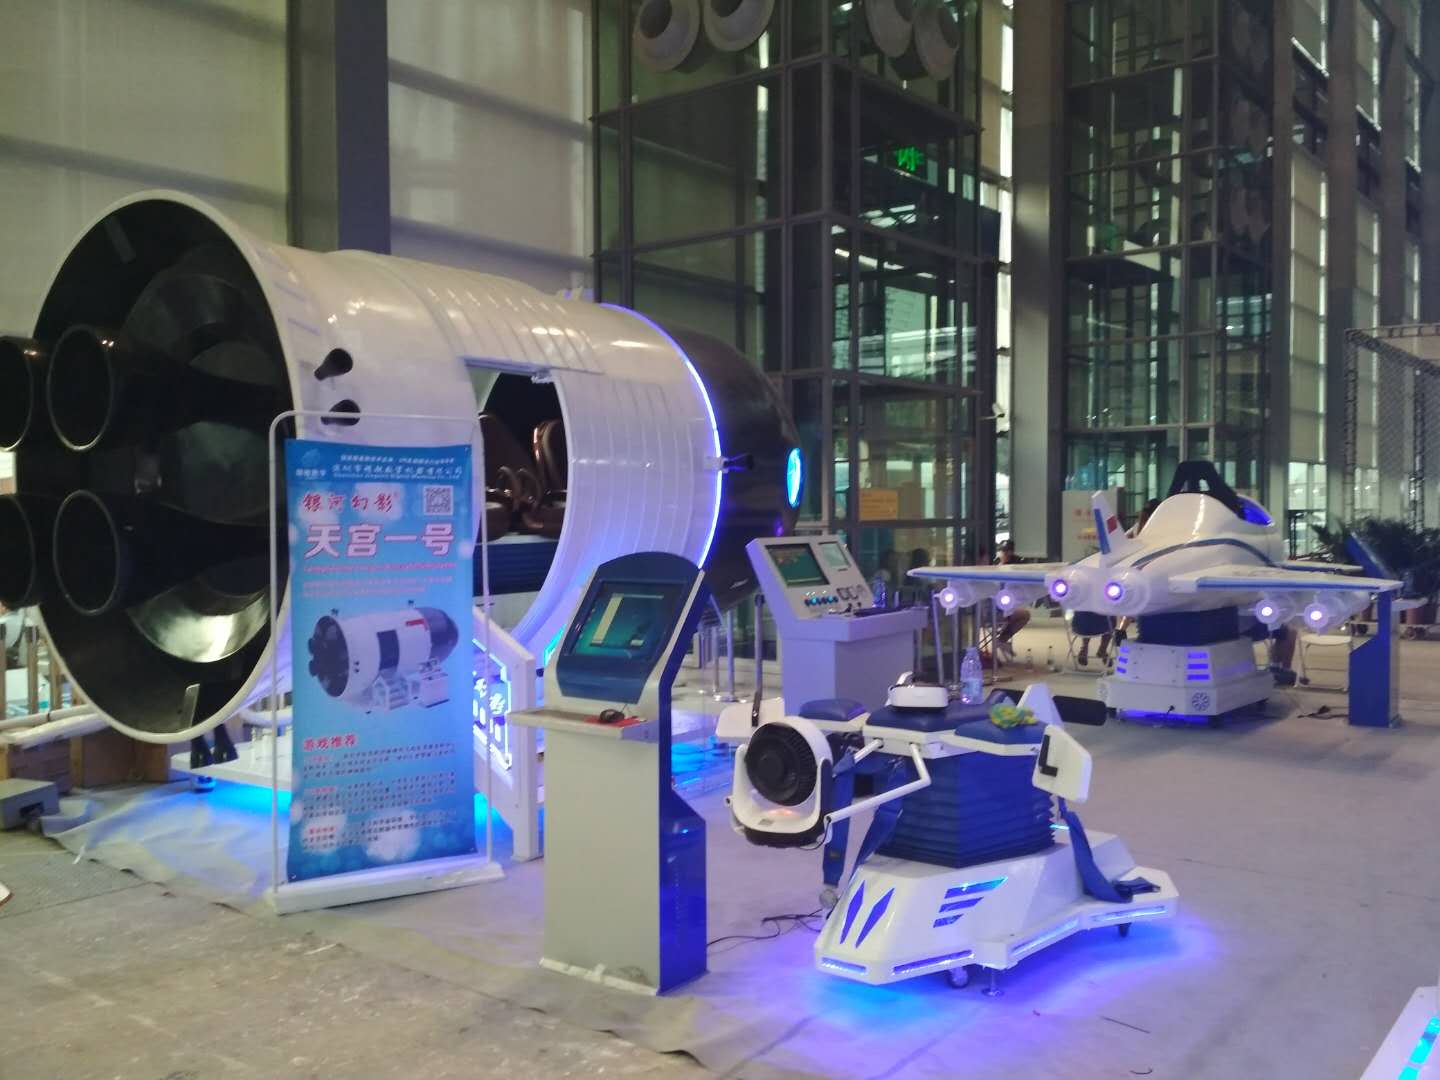 VR航空嘉年华 VR设备租赁神器 吸引人气神器图片